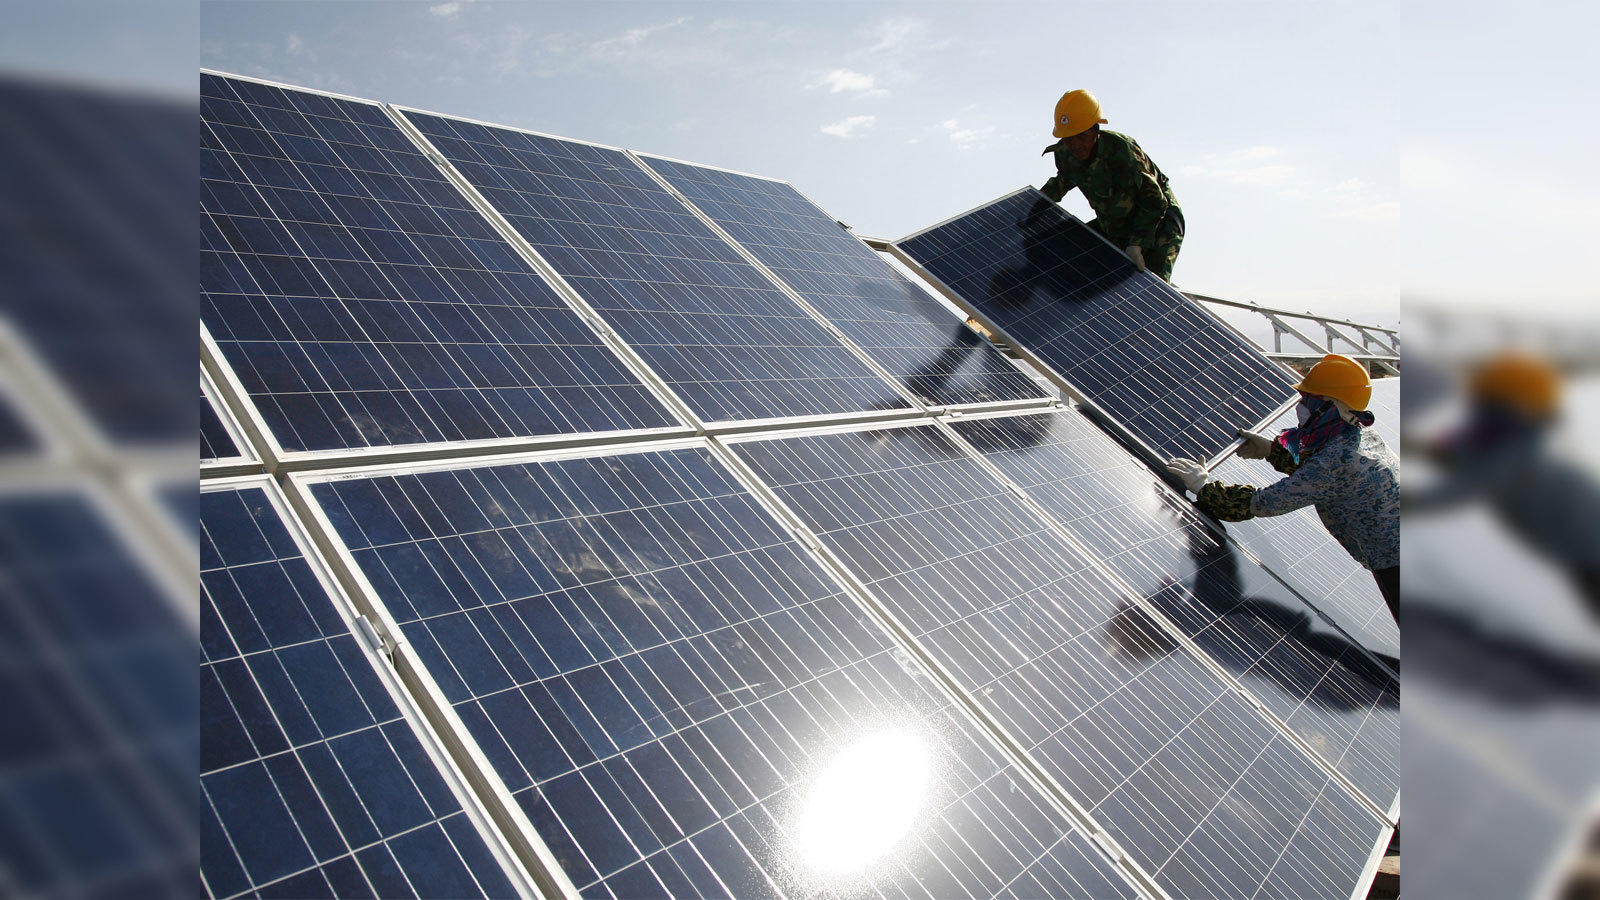 Where To Buy Mini Solar Panels? - Solyndra